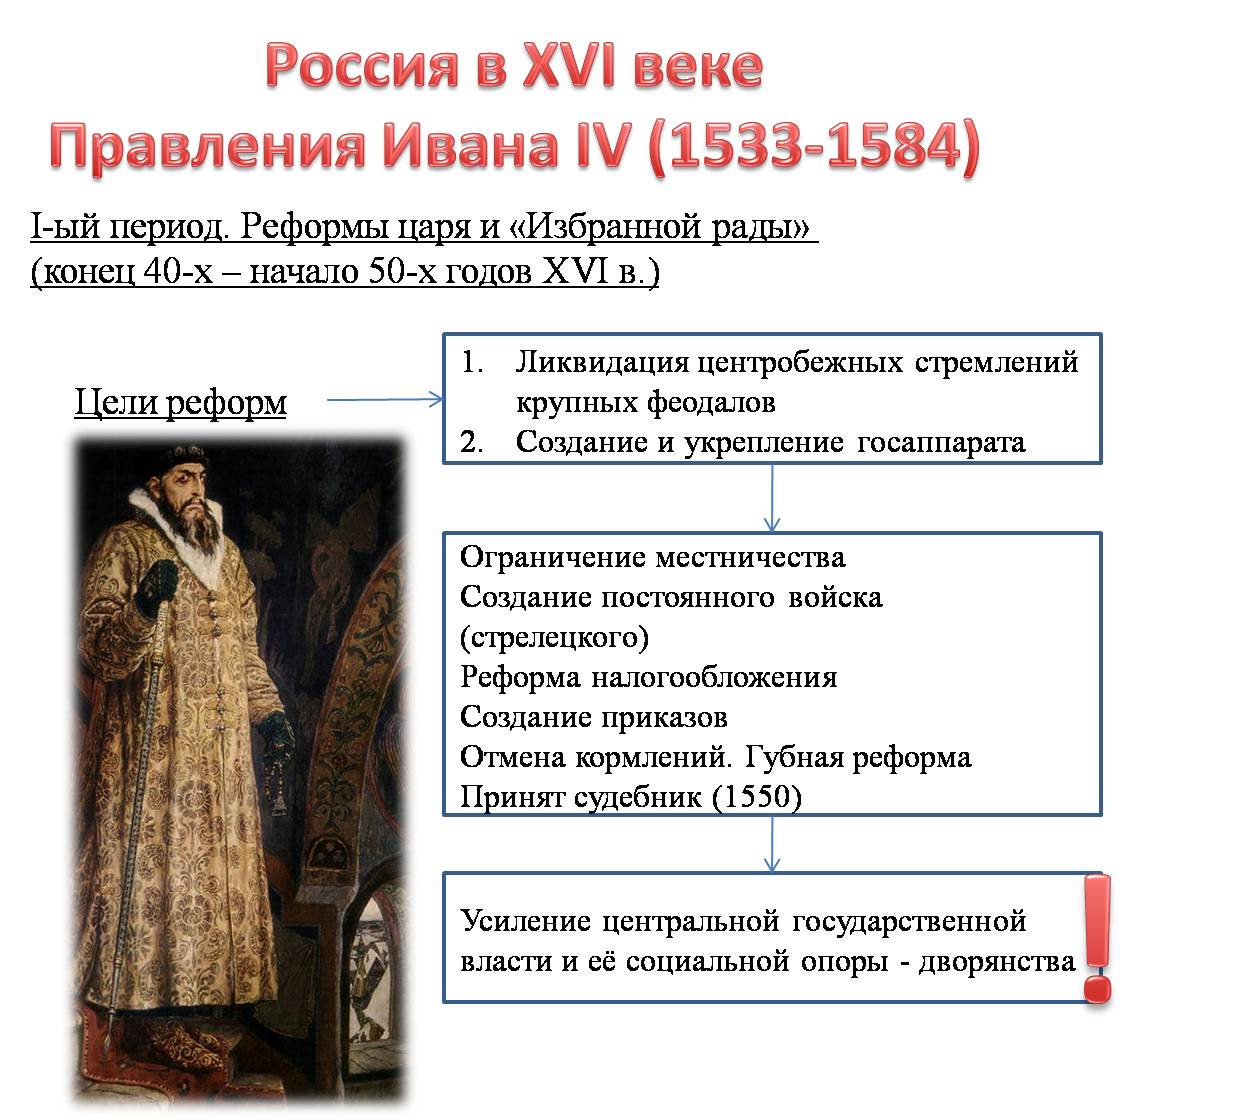 Схема по теме правление Ивана IV Грозного